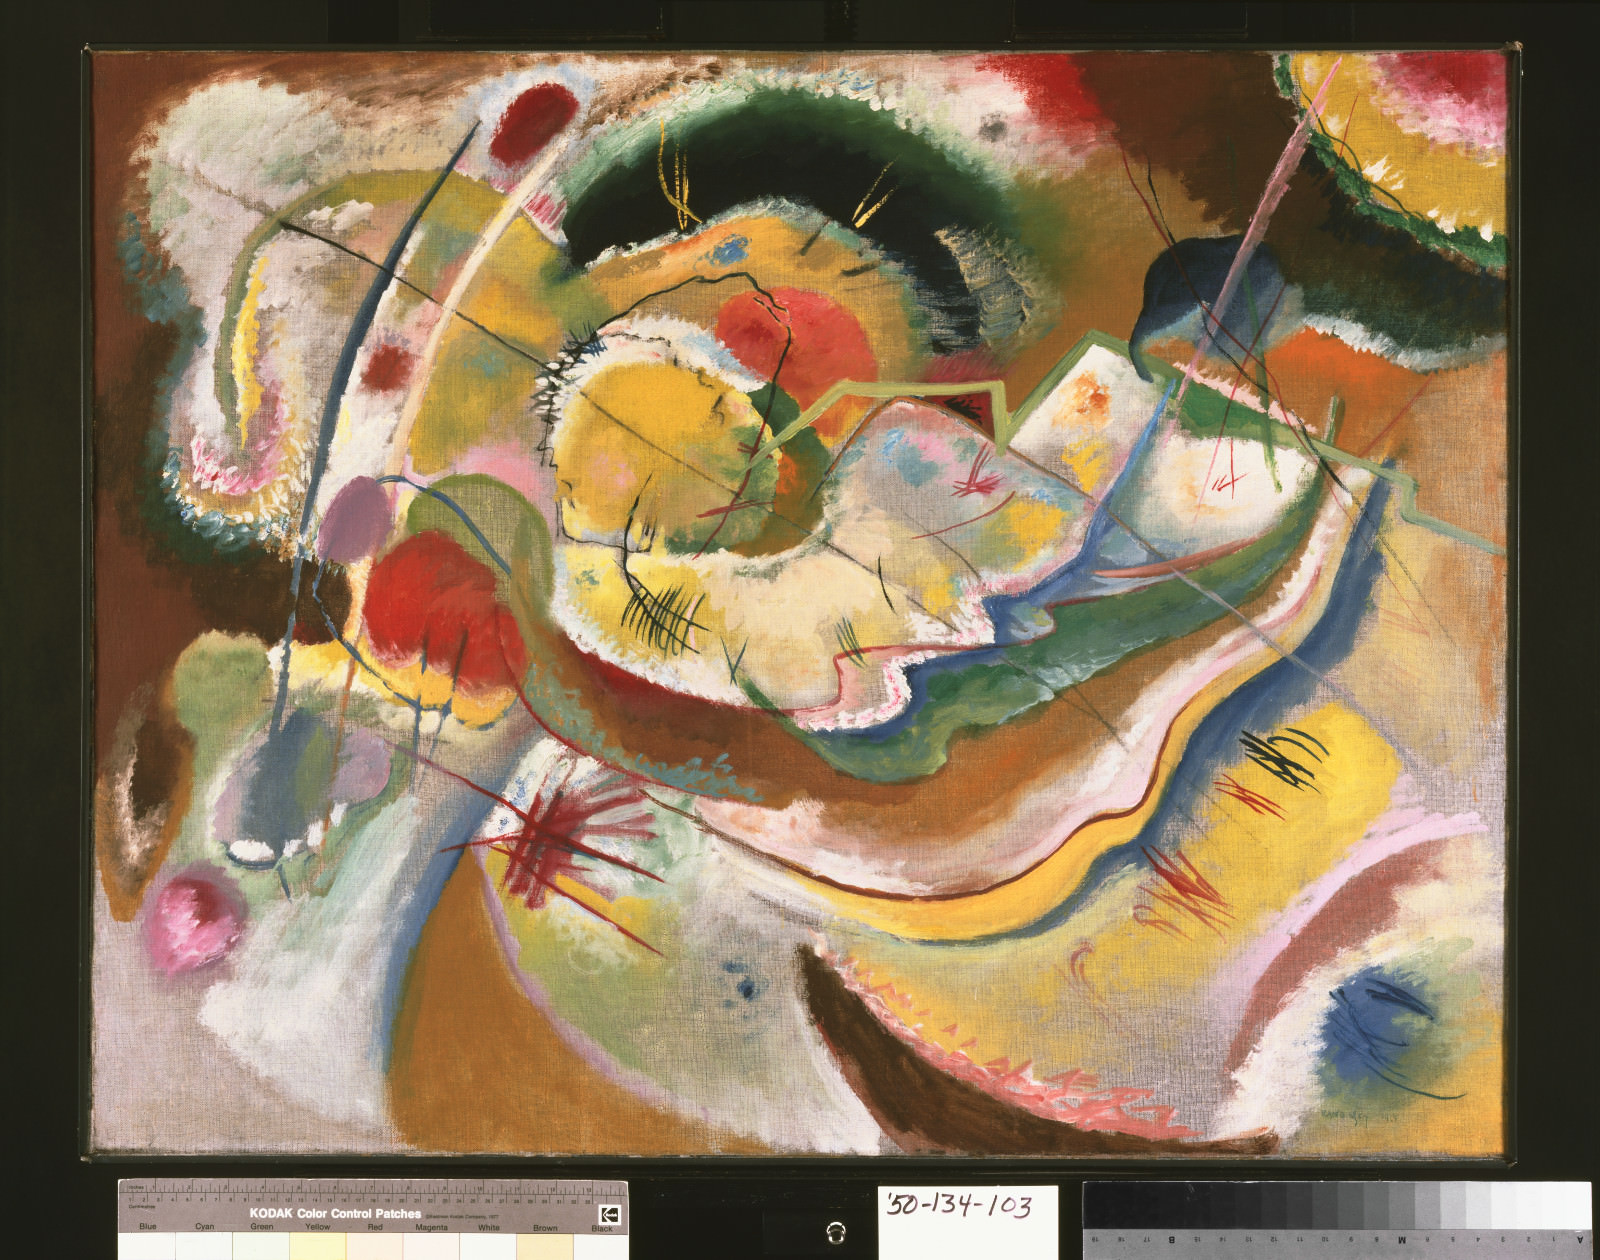 Feige. 4 - Vasily Kandinsky, Kleine Malerei mit Gelb (Improvisation), 1914, Öl auf Leinwand, 31 x 39 5/8 polegadas (78.7 x 100.6 cm) gerahmte: 32 3/4 x 41 1/2 x 2 1/2 poZoll83.2 x 105.4 x 6.4 cxcm Philadelphia Museum of Art, Die Louise und Walter Arensberg-Sammlung, 1950-134-103.